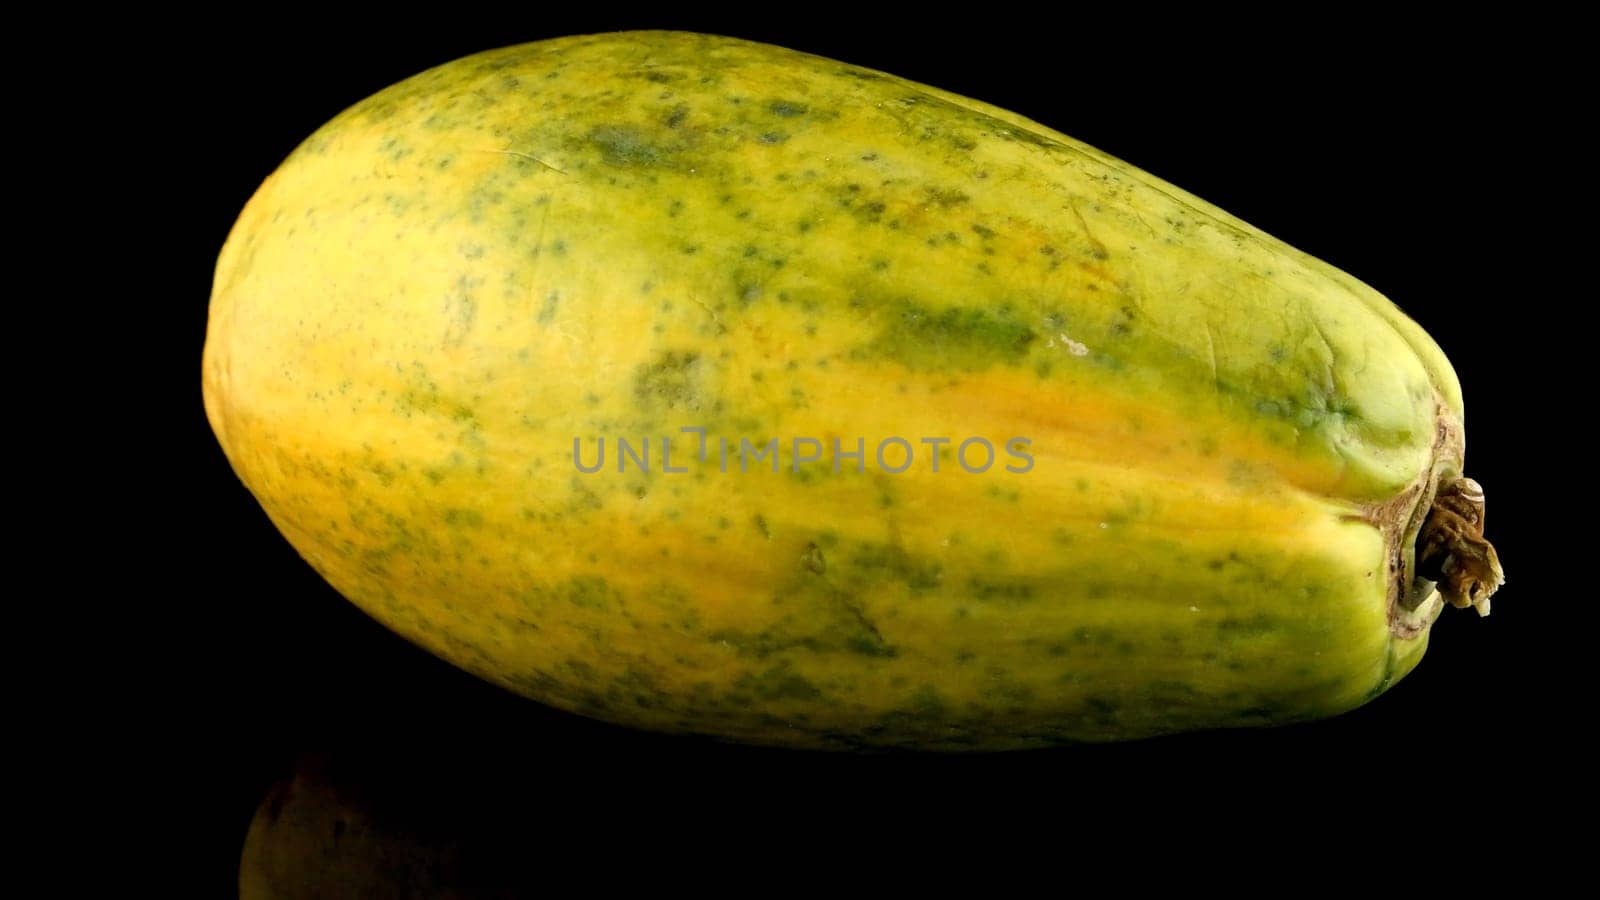 Papaya fruit on black background by homydesign